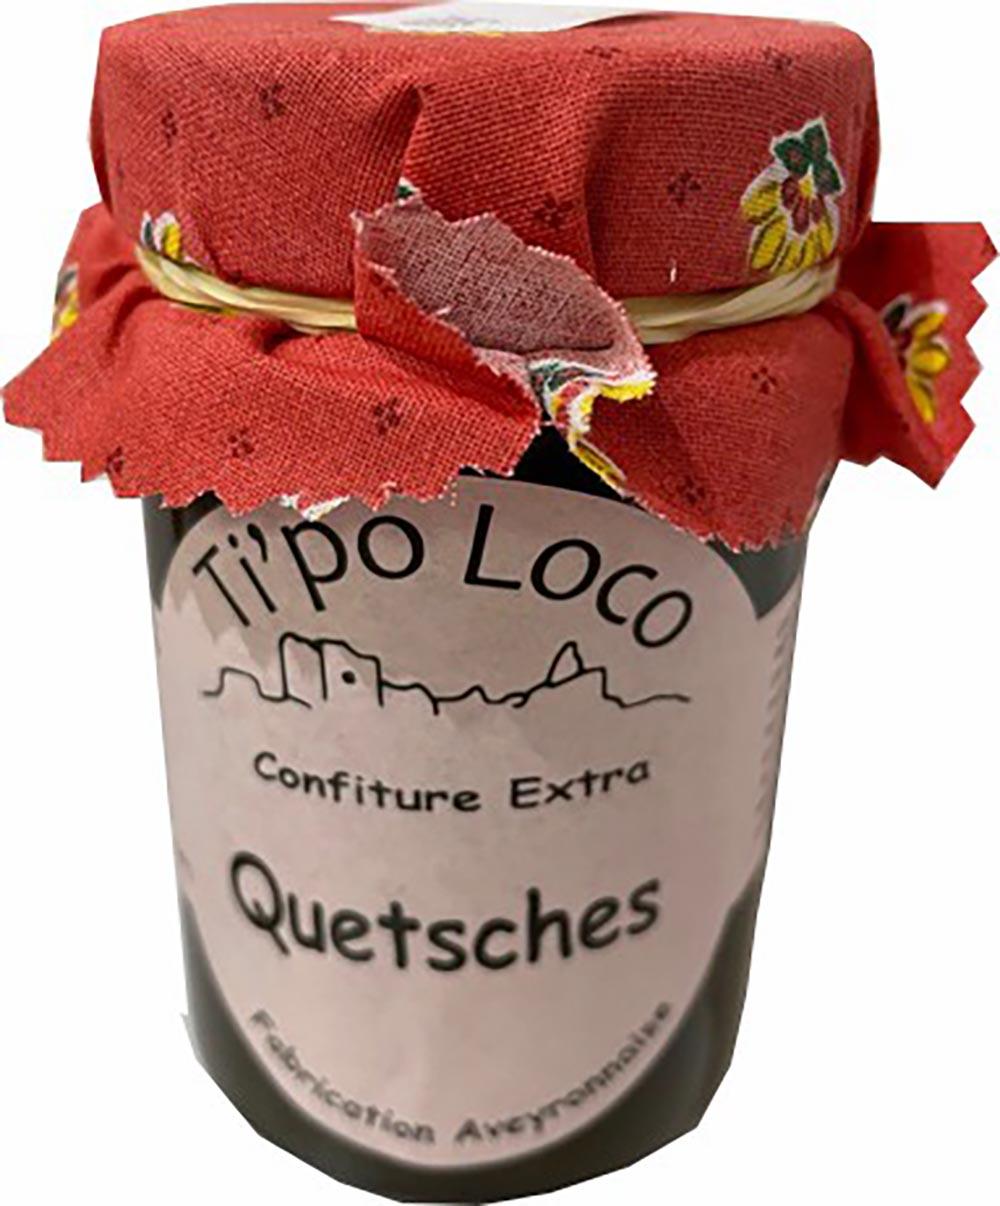 Confiture Ti'po Loco - Quetsches (240g)